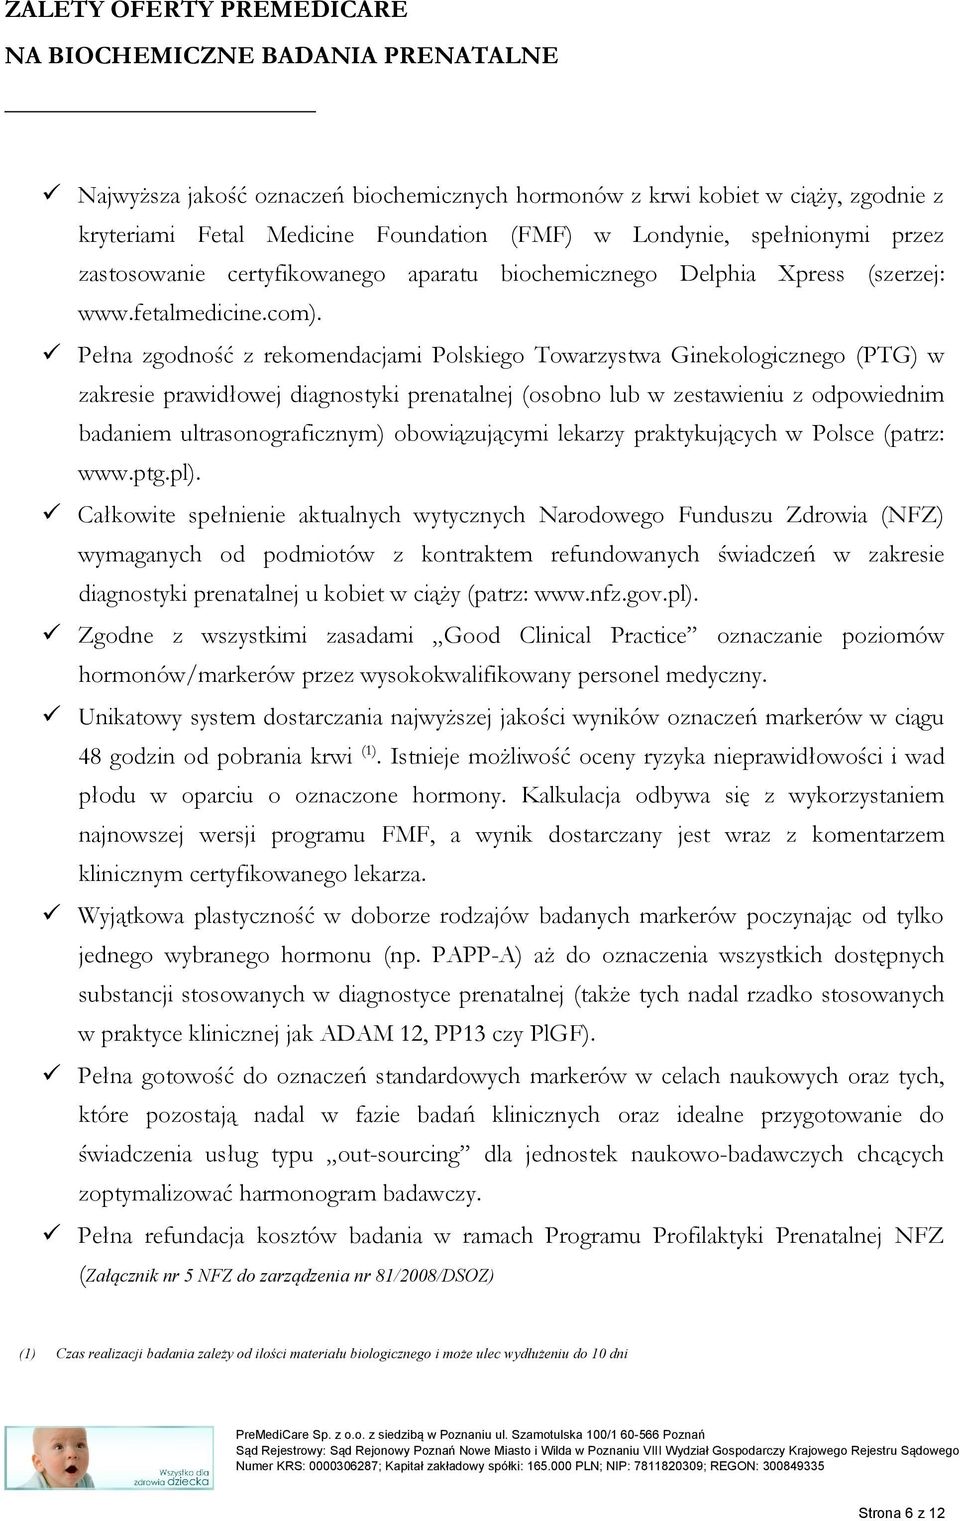 Pełna zgodność z rekomendacjami Polskiego Towarzystwa Ginekologicznego (PTG) w zakresie prawidłowej diagnostyki prenatalnej (osobno lub w zestawieniu z odpowiednim badaniem ultrasonograficznym)